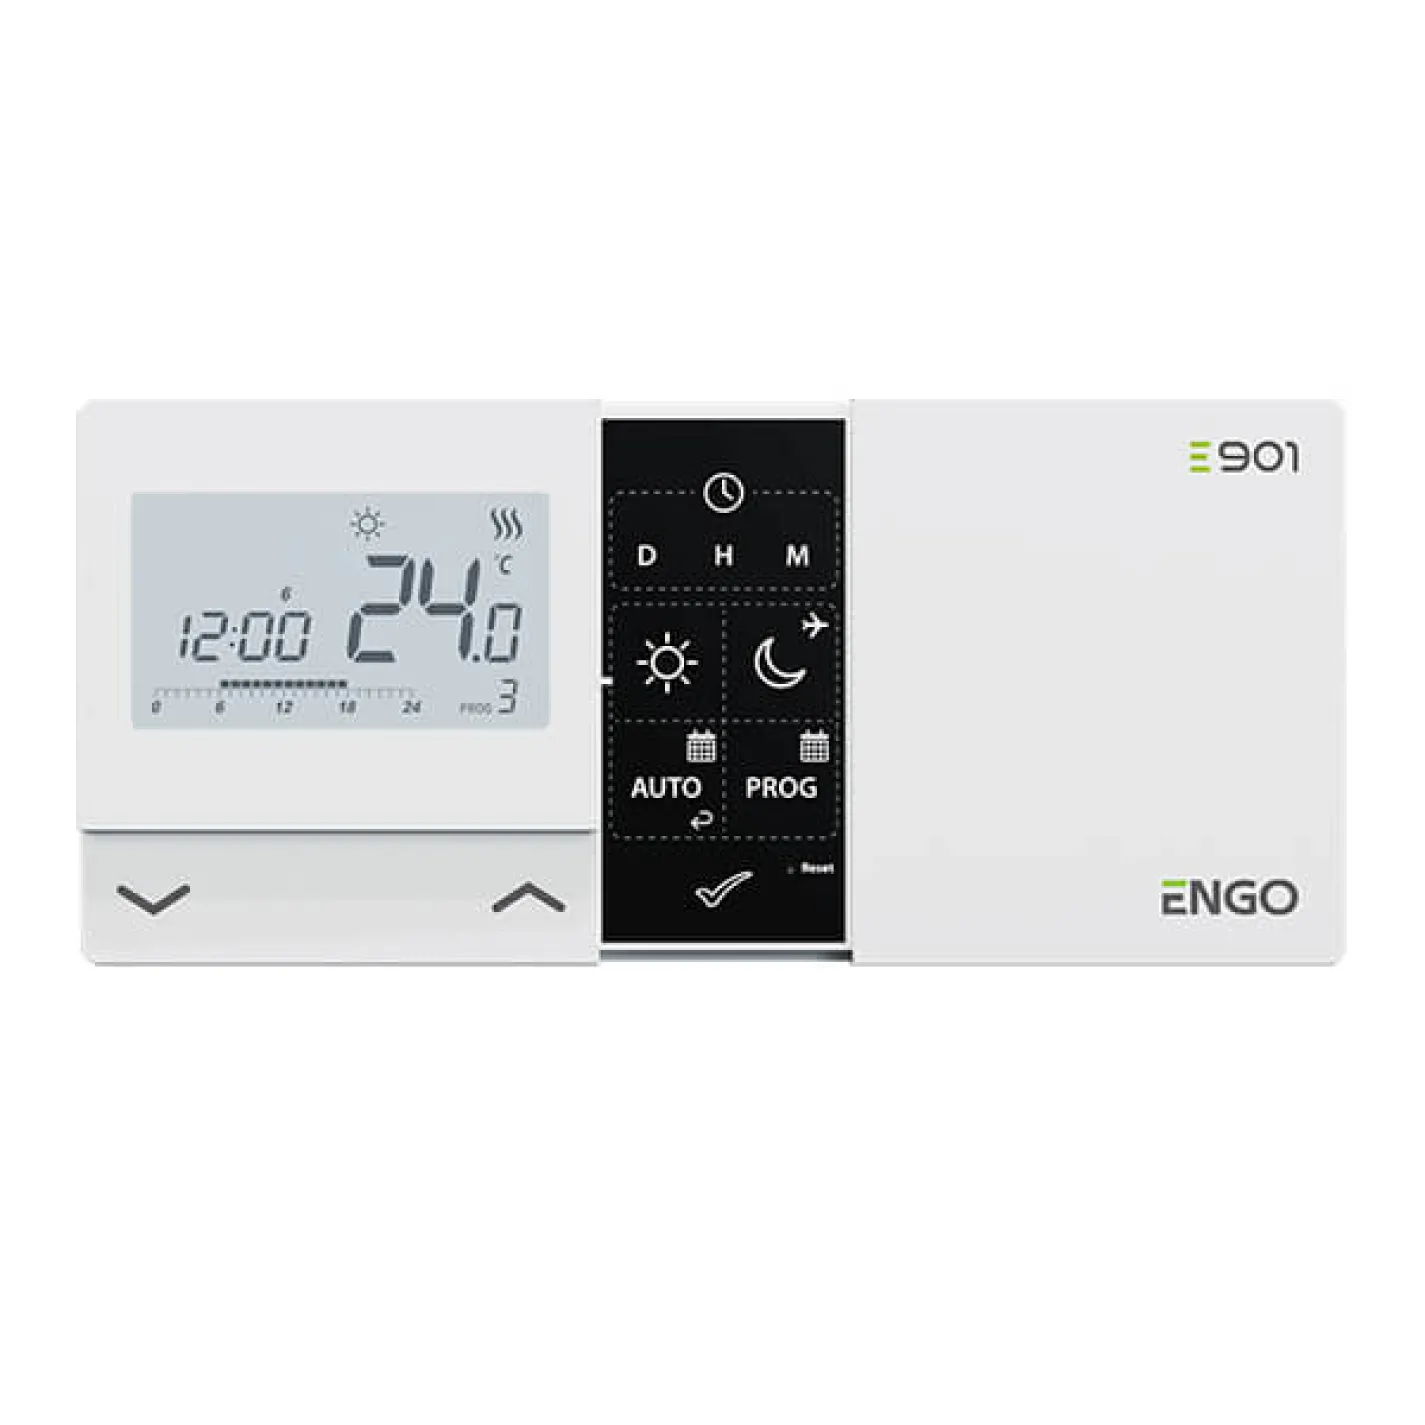 Програмований проводовий терморегулятор Engo E901 - Фото 1